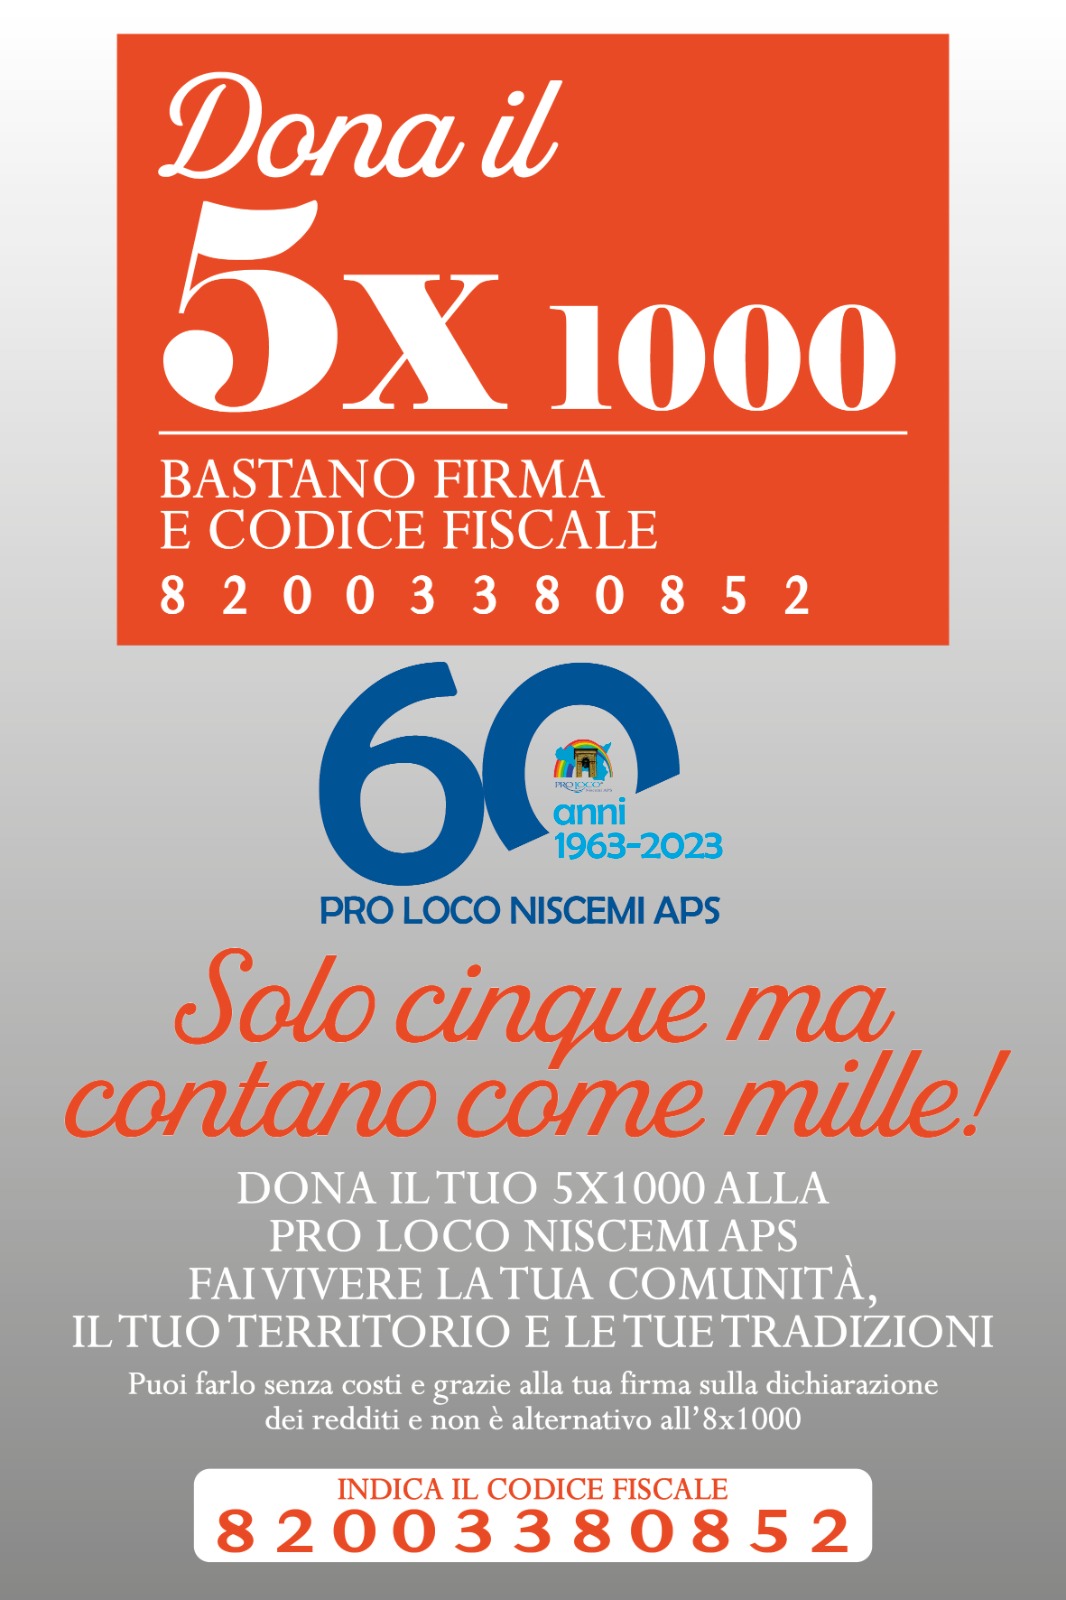 5x1000 Pro Loco Niscemi APS